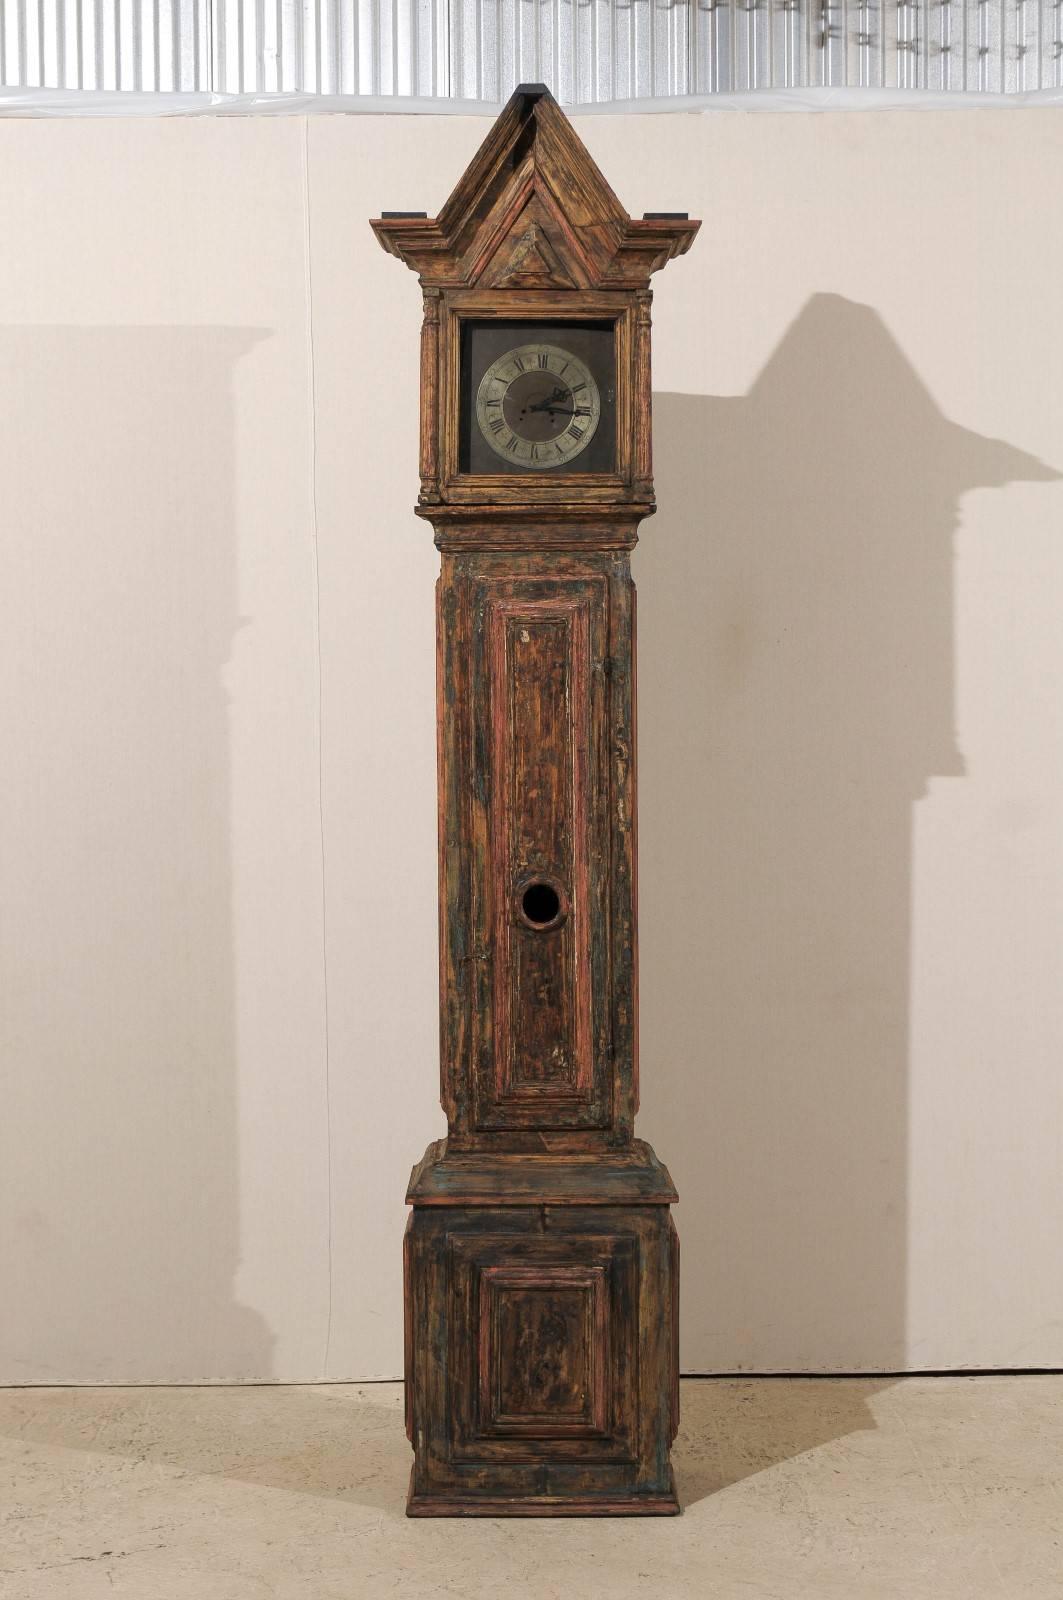 Une horloge suédoise du 18ème siècle. Cette horloge suédoise en bois au profil linéaire présente une tête carrée surmontée d'une crête de forme triangulaire. Cette horloge a conservé sa face métallique, ses aiguilles et son mouvement d'origine.  Le